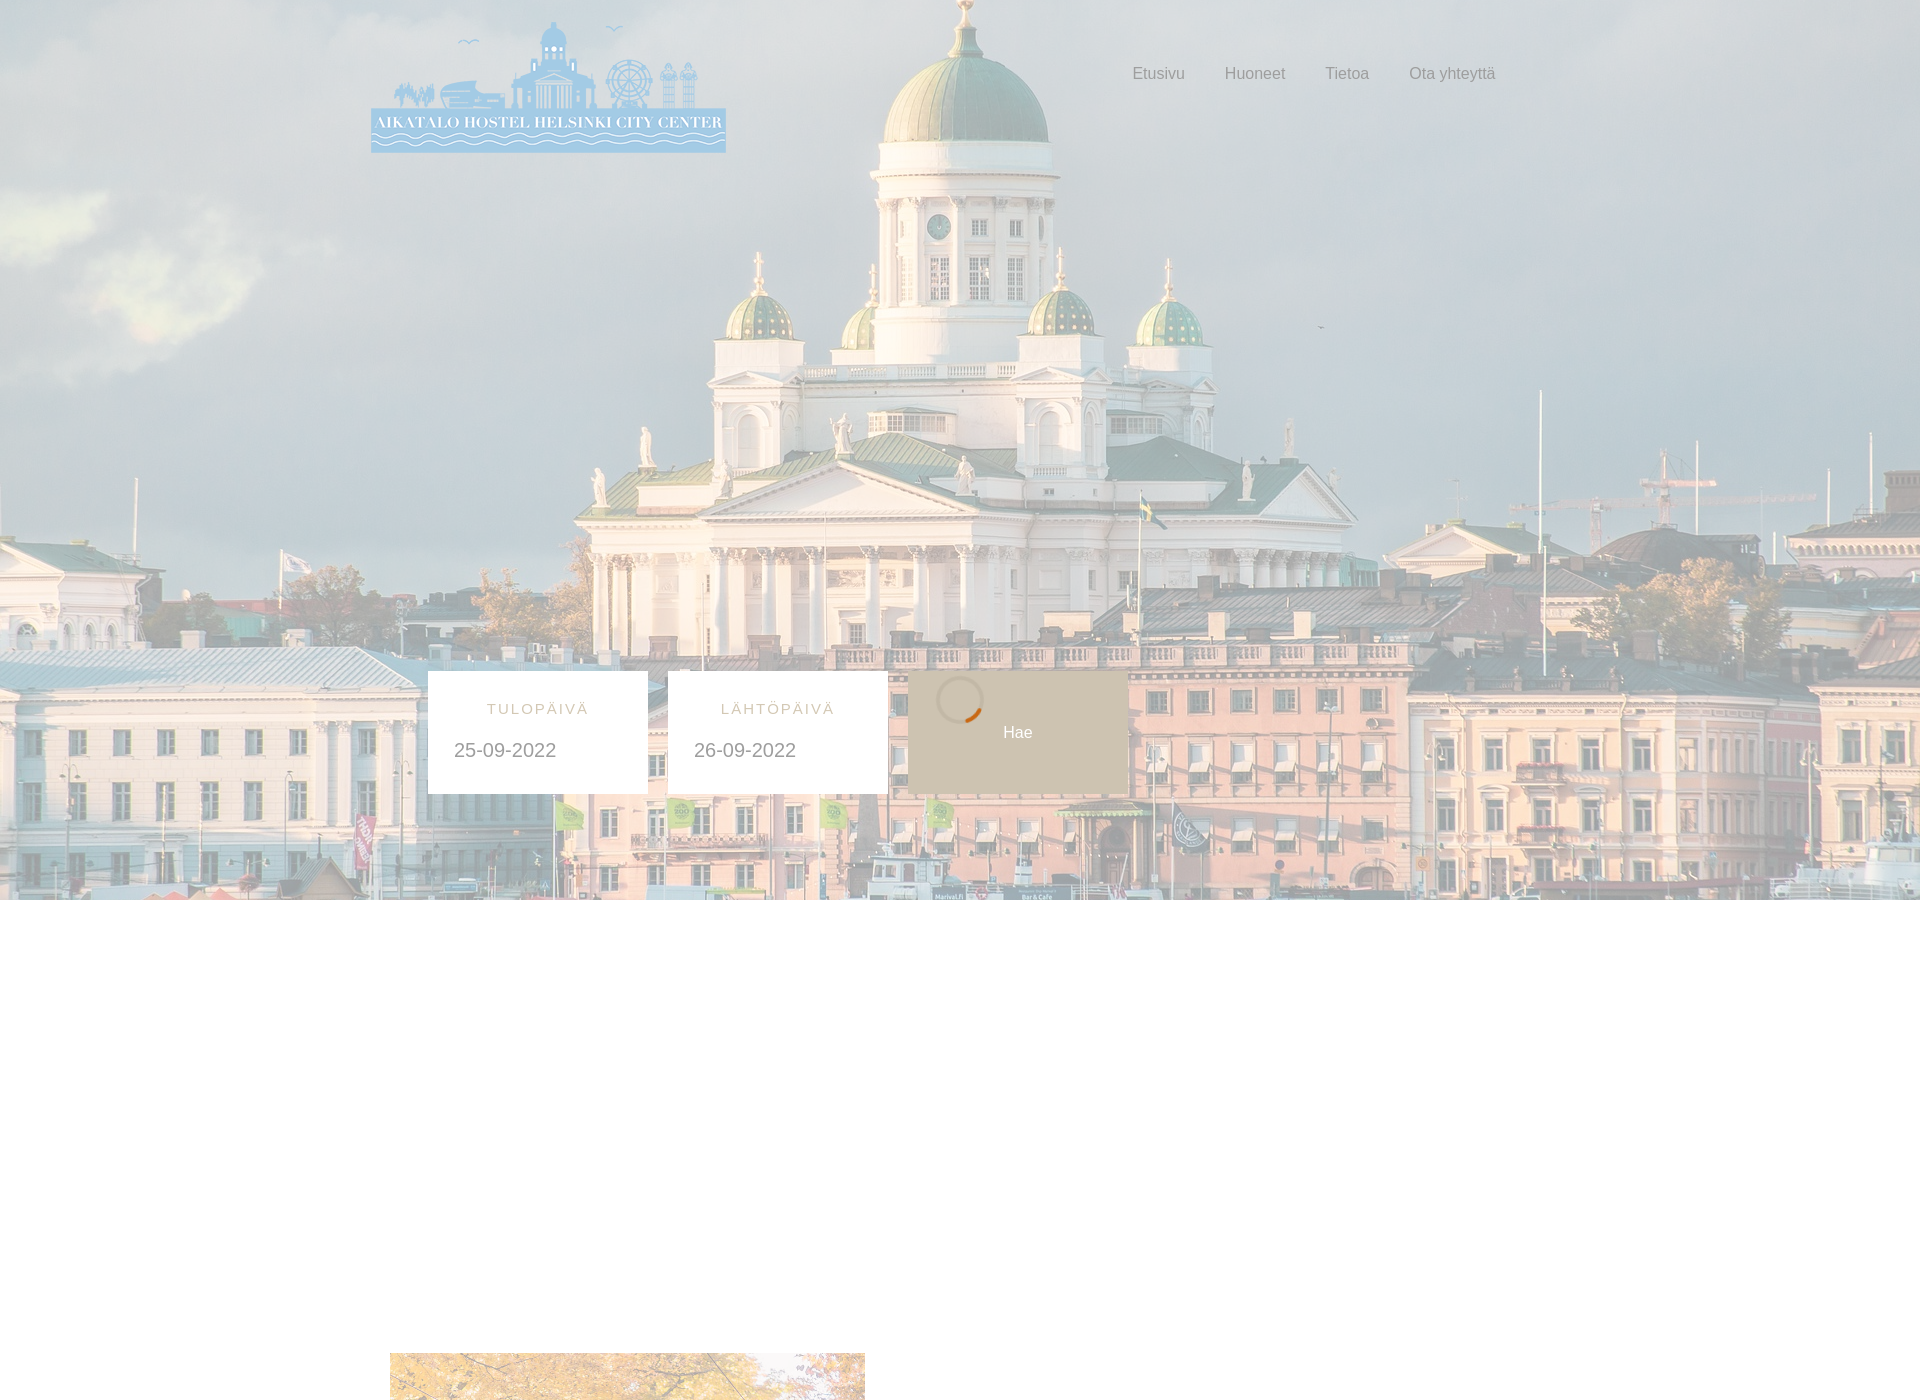 Skärmdump för aikatalohostelhelsinkicitycenter.fi